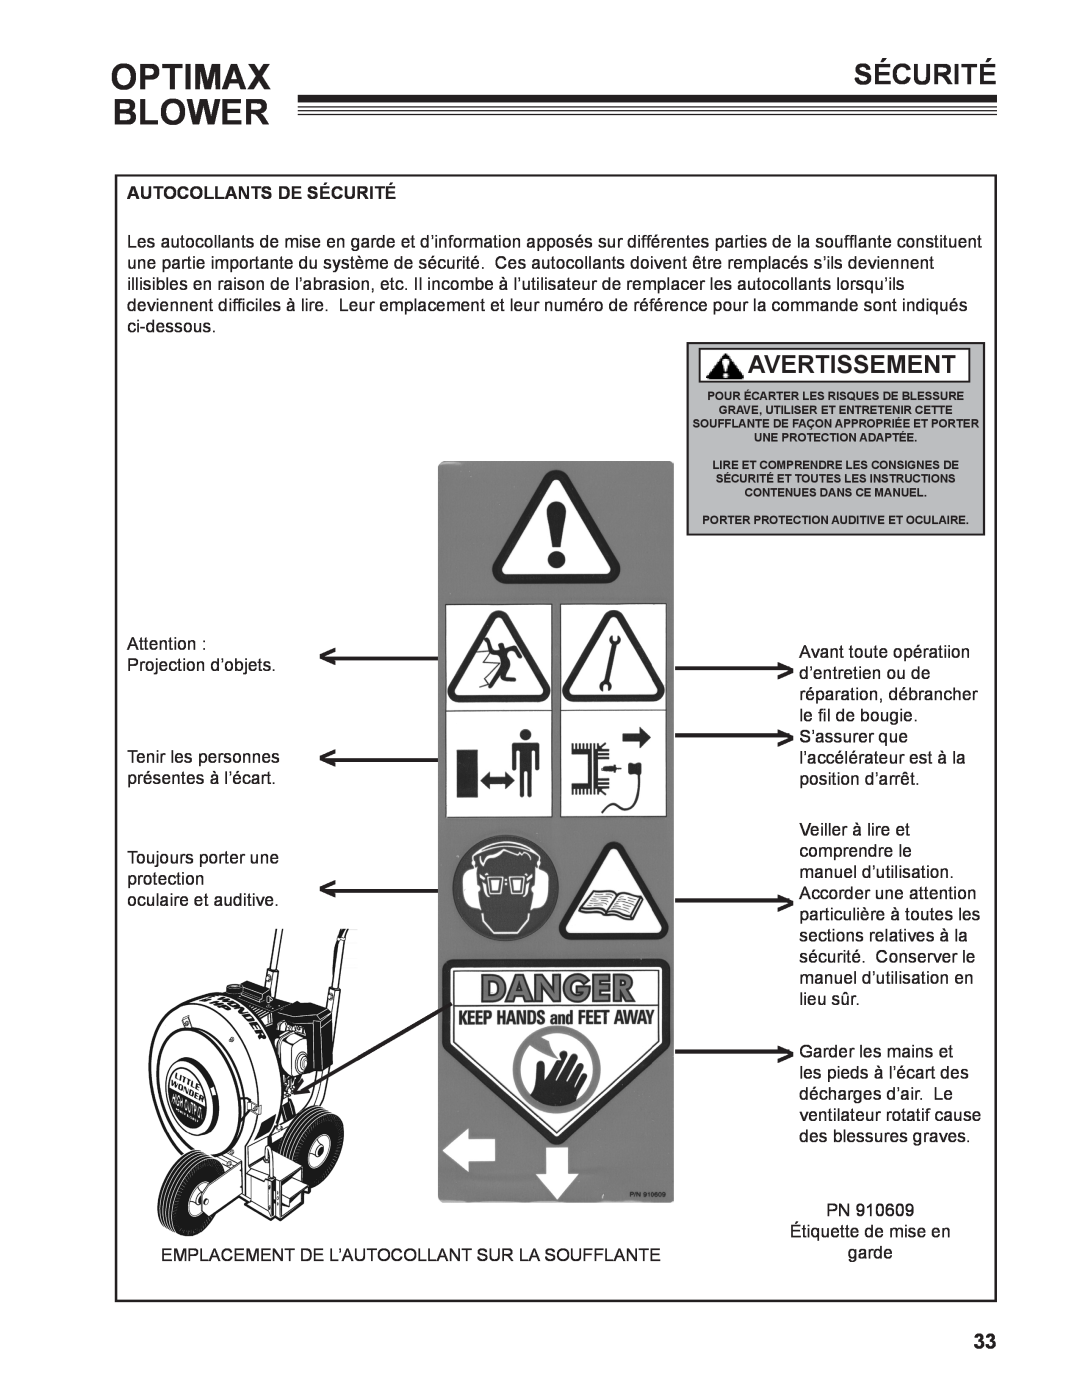 Little Wonder LB601-00-01 technical manual Optimax, Blower, Avertissement, Autocollants De Sécurité 